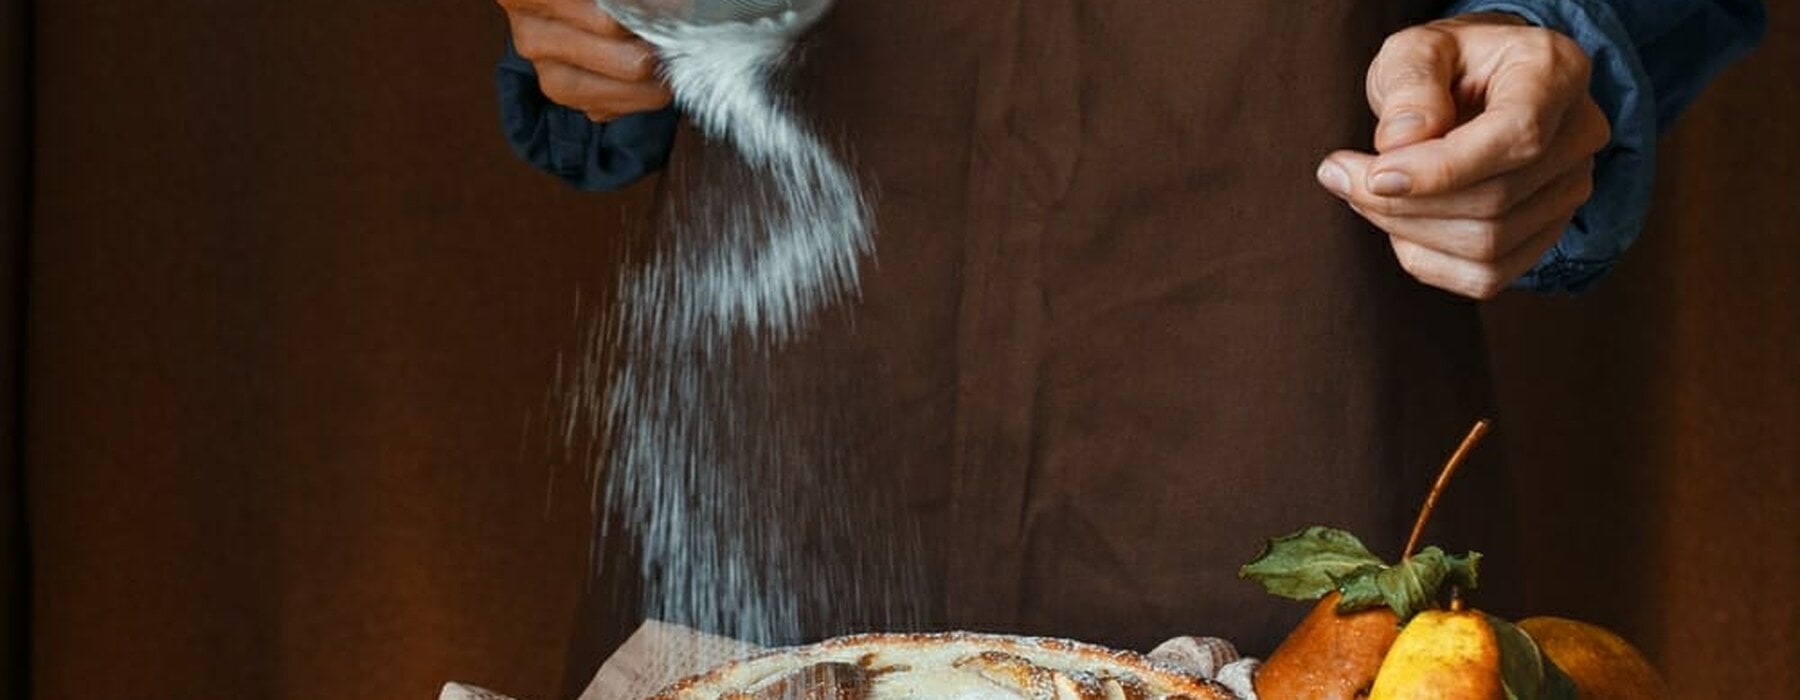 Woman sprinkling sugar on pie